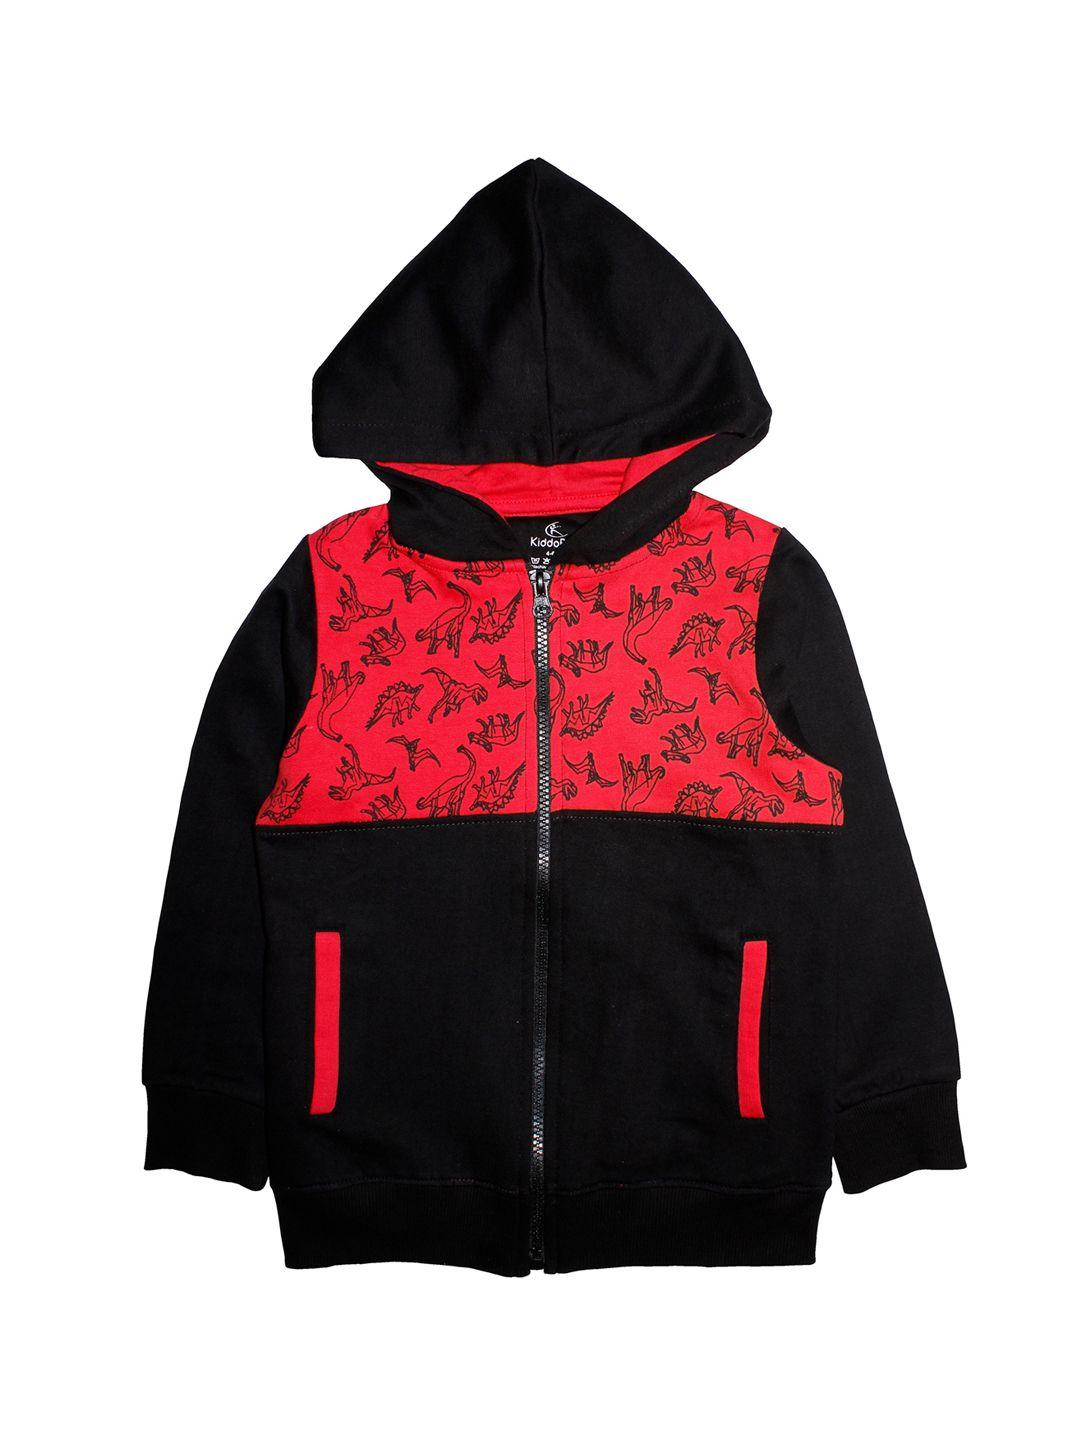 kiddopanti boys black & red printed hooded sweatshirt